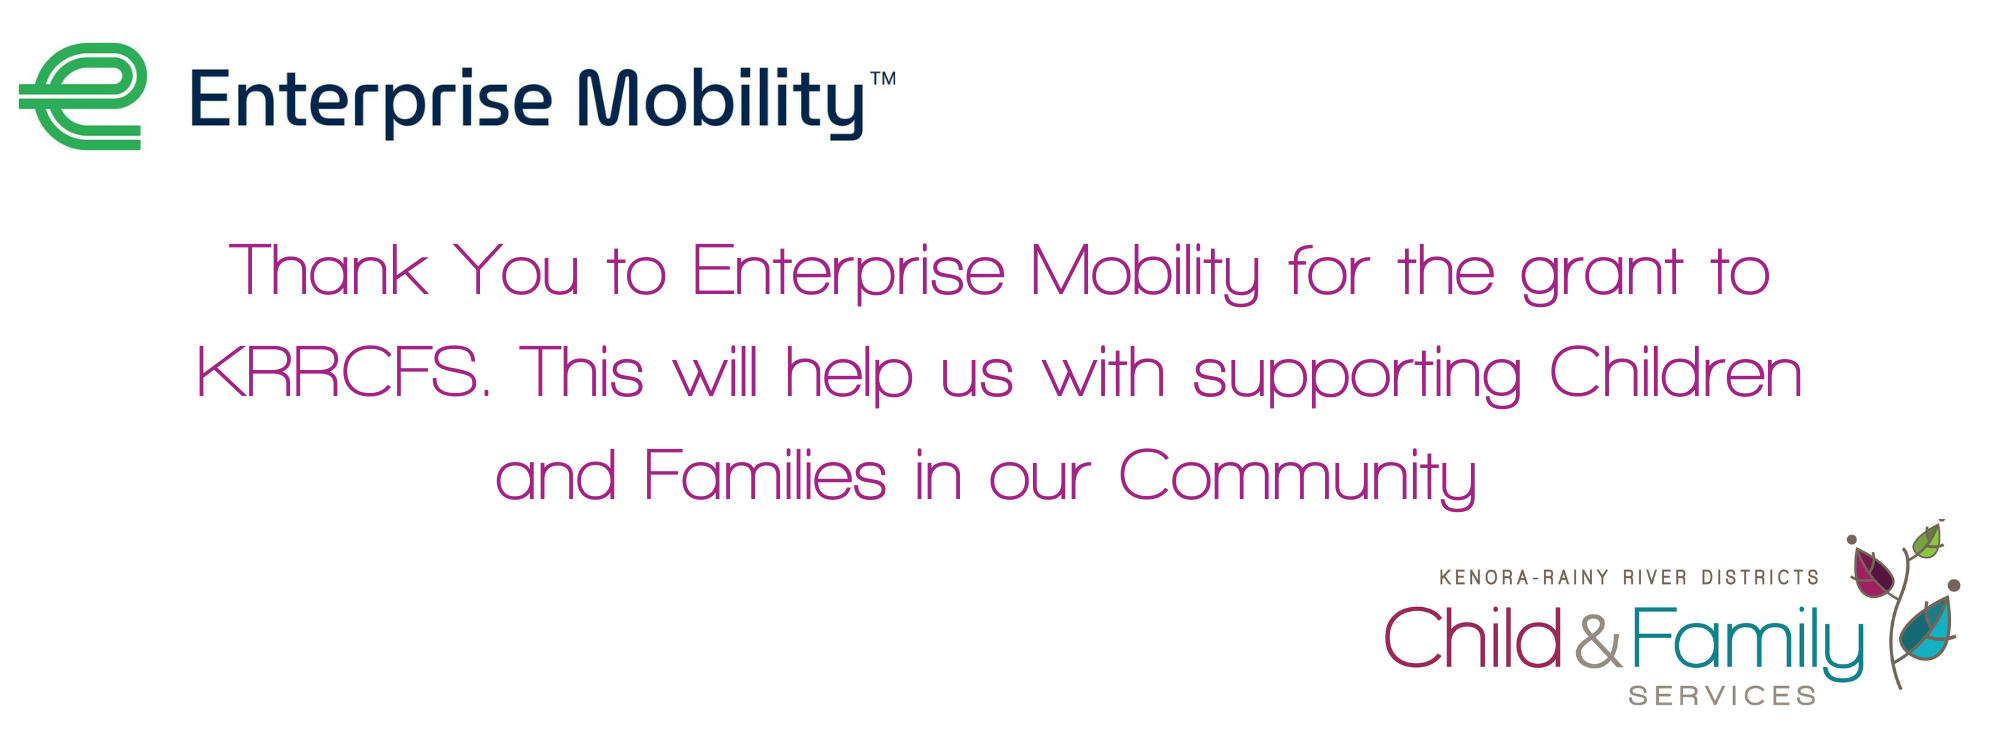 Enterprise+Mobility+banner.png